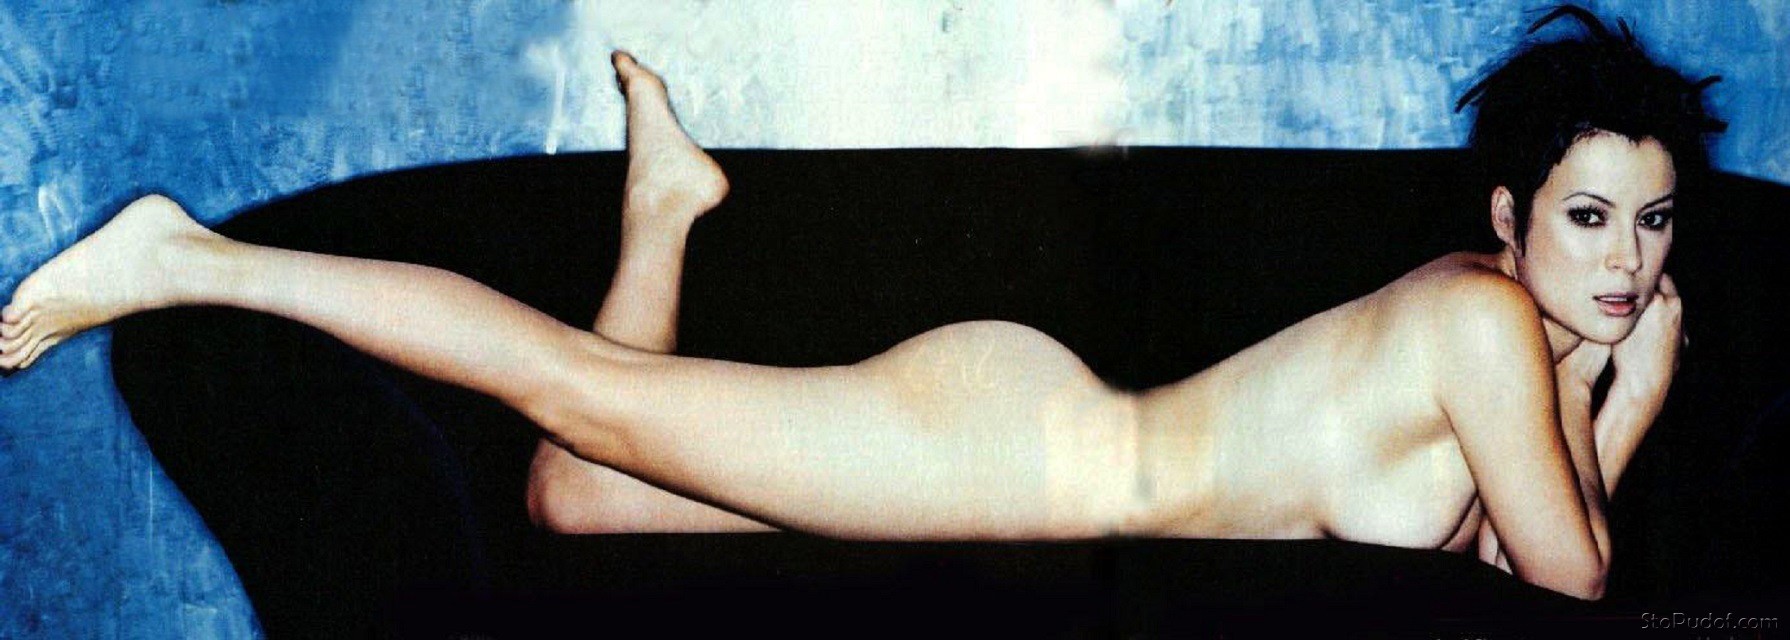 Jennifer Tilly Nude Images 98